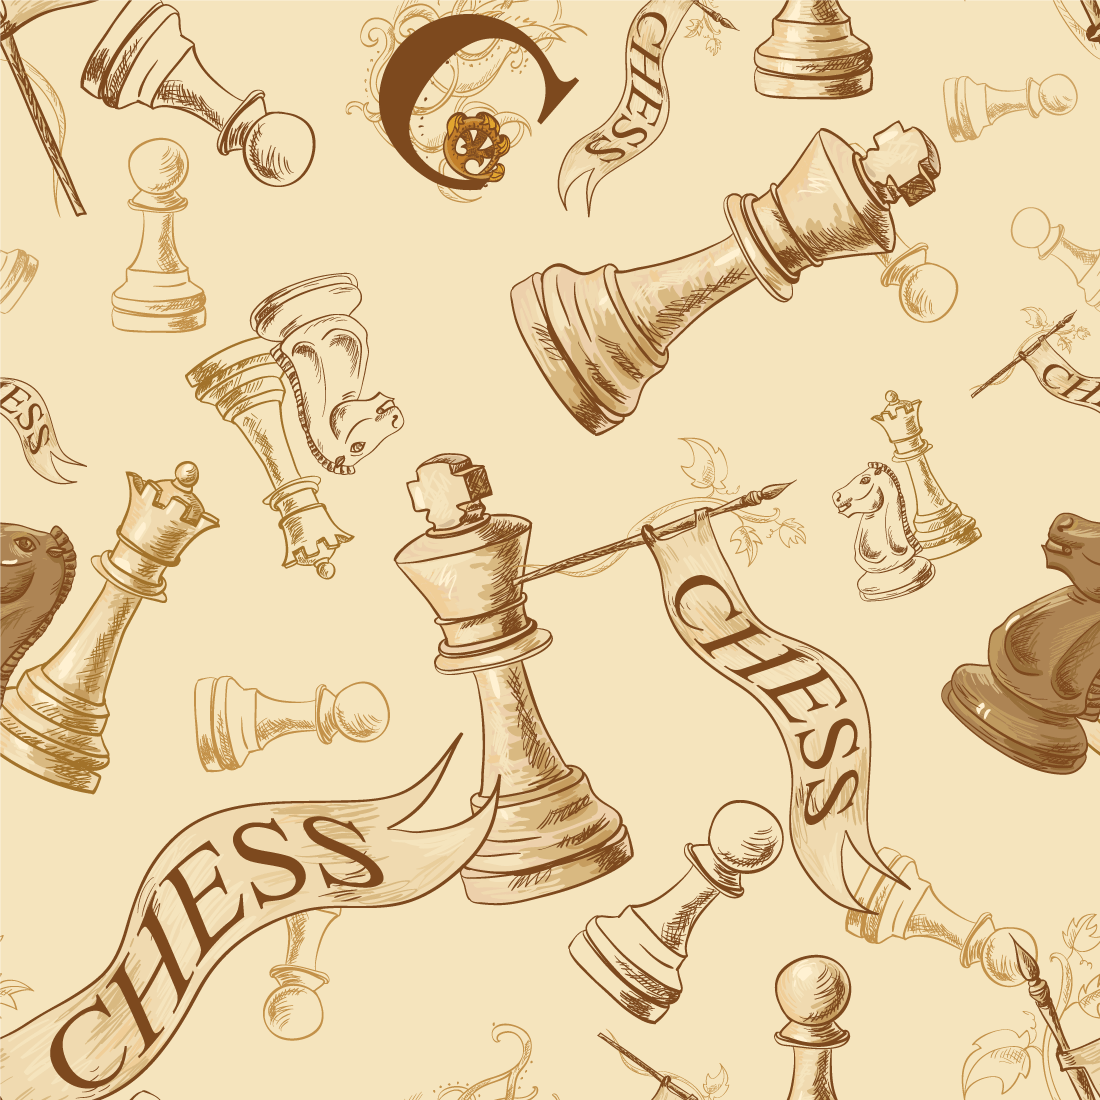 Papeis xadrez grátis para baixar - Cantinho do blog